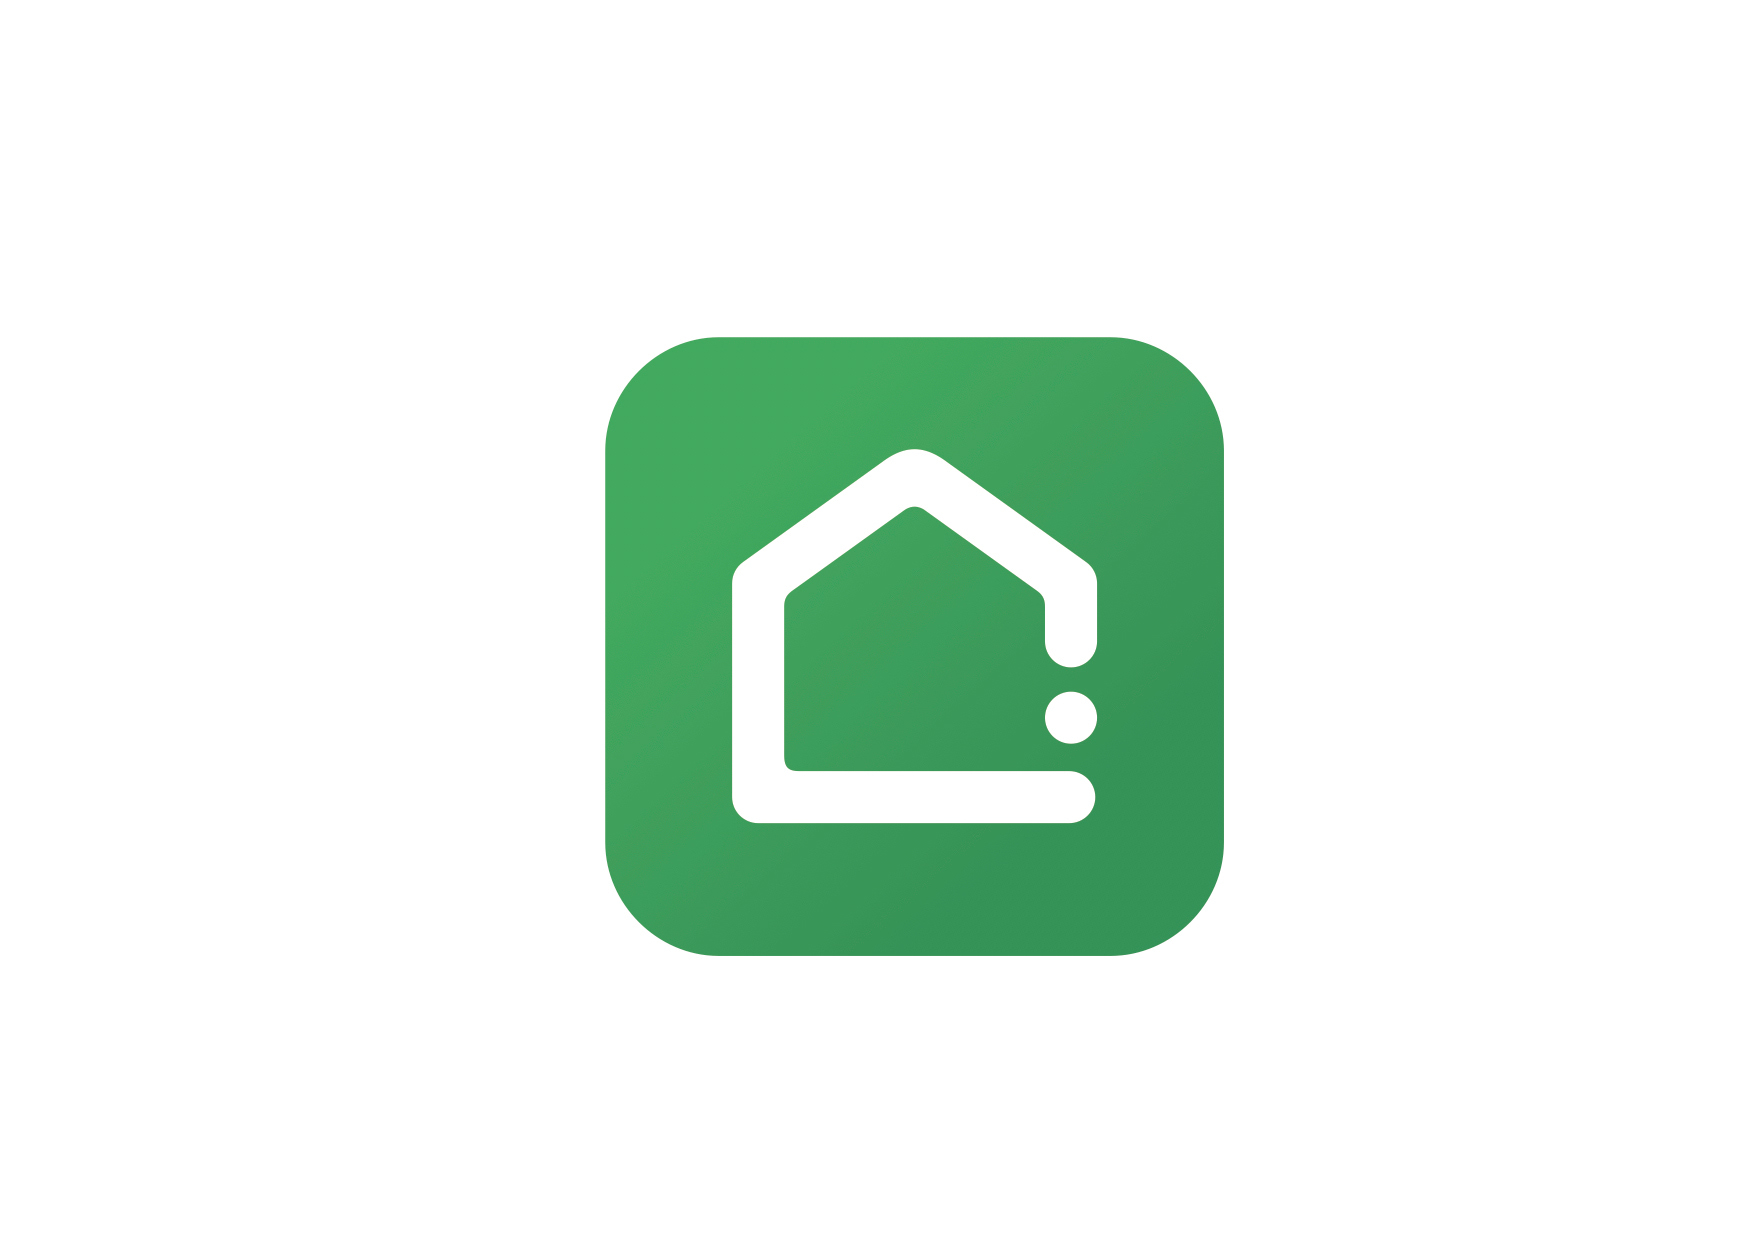 新浪微博截图 北京链家设计研发了一款专门从事房地产交易的app软件